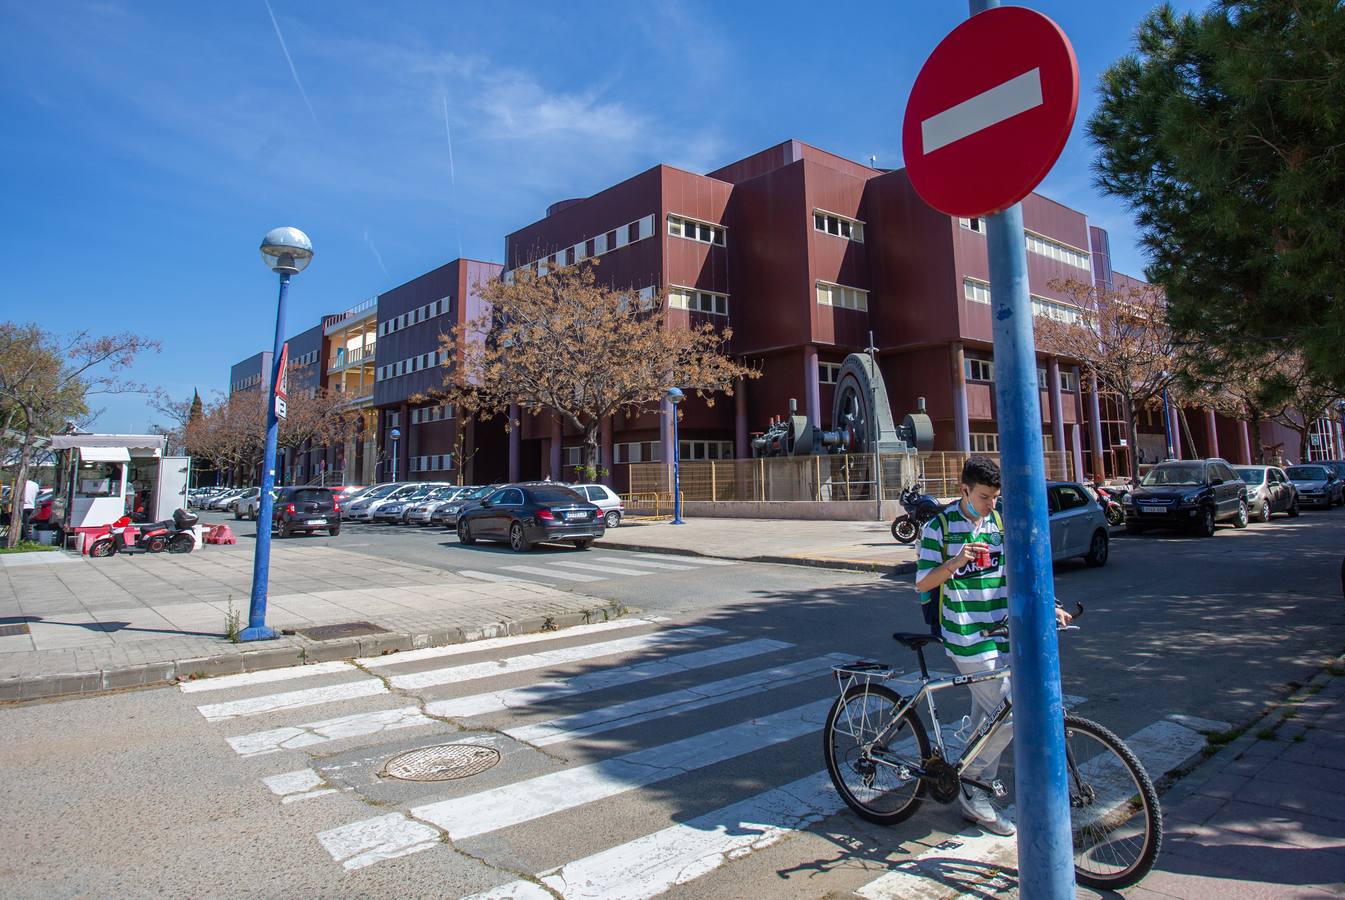 Los centros de la Universidad de Sevilla están casi vacíos